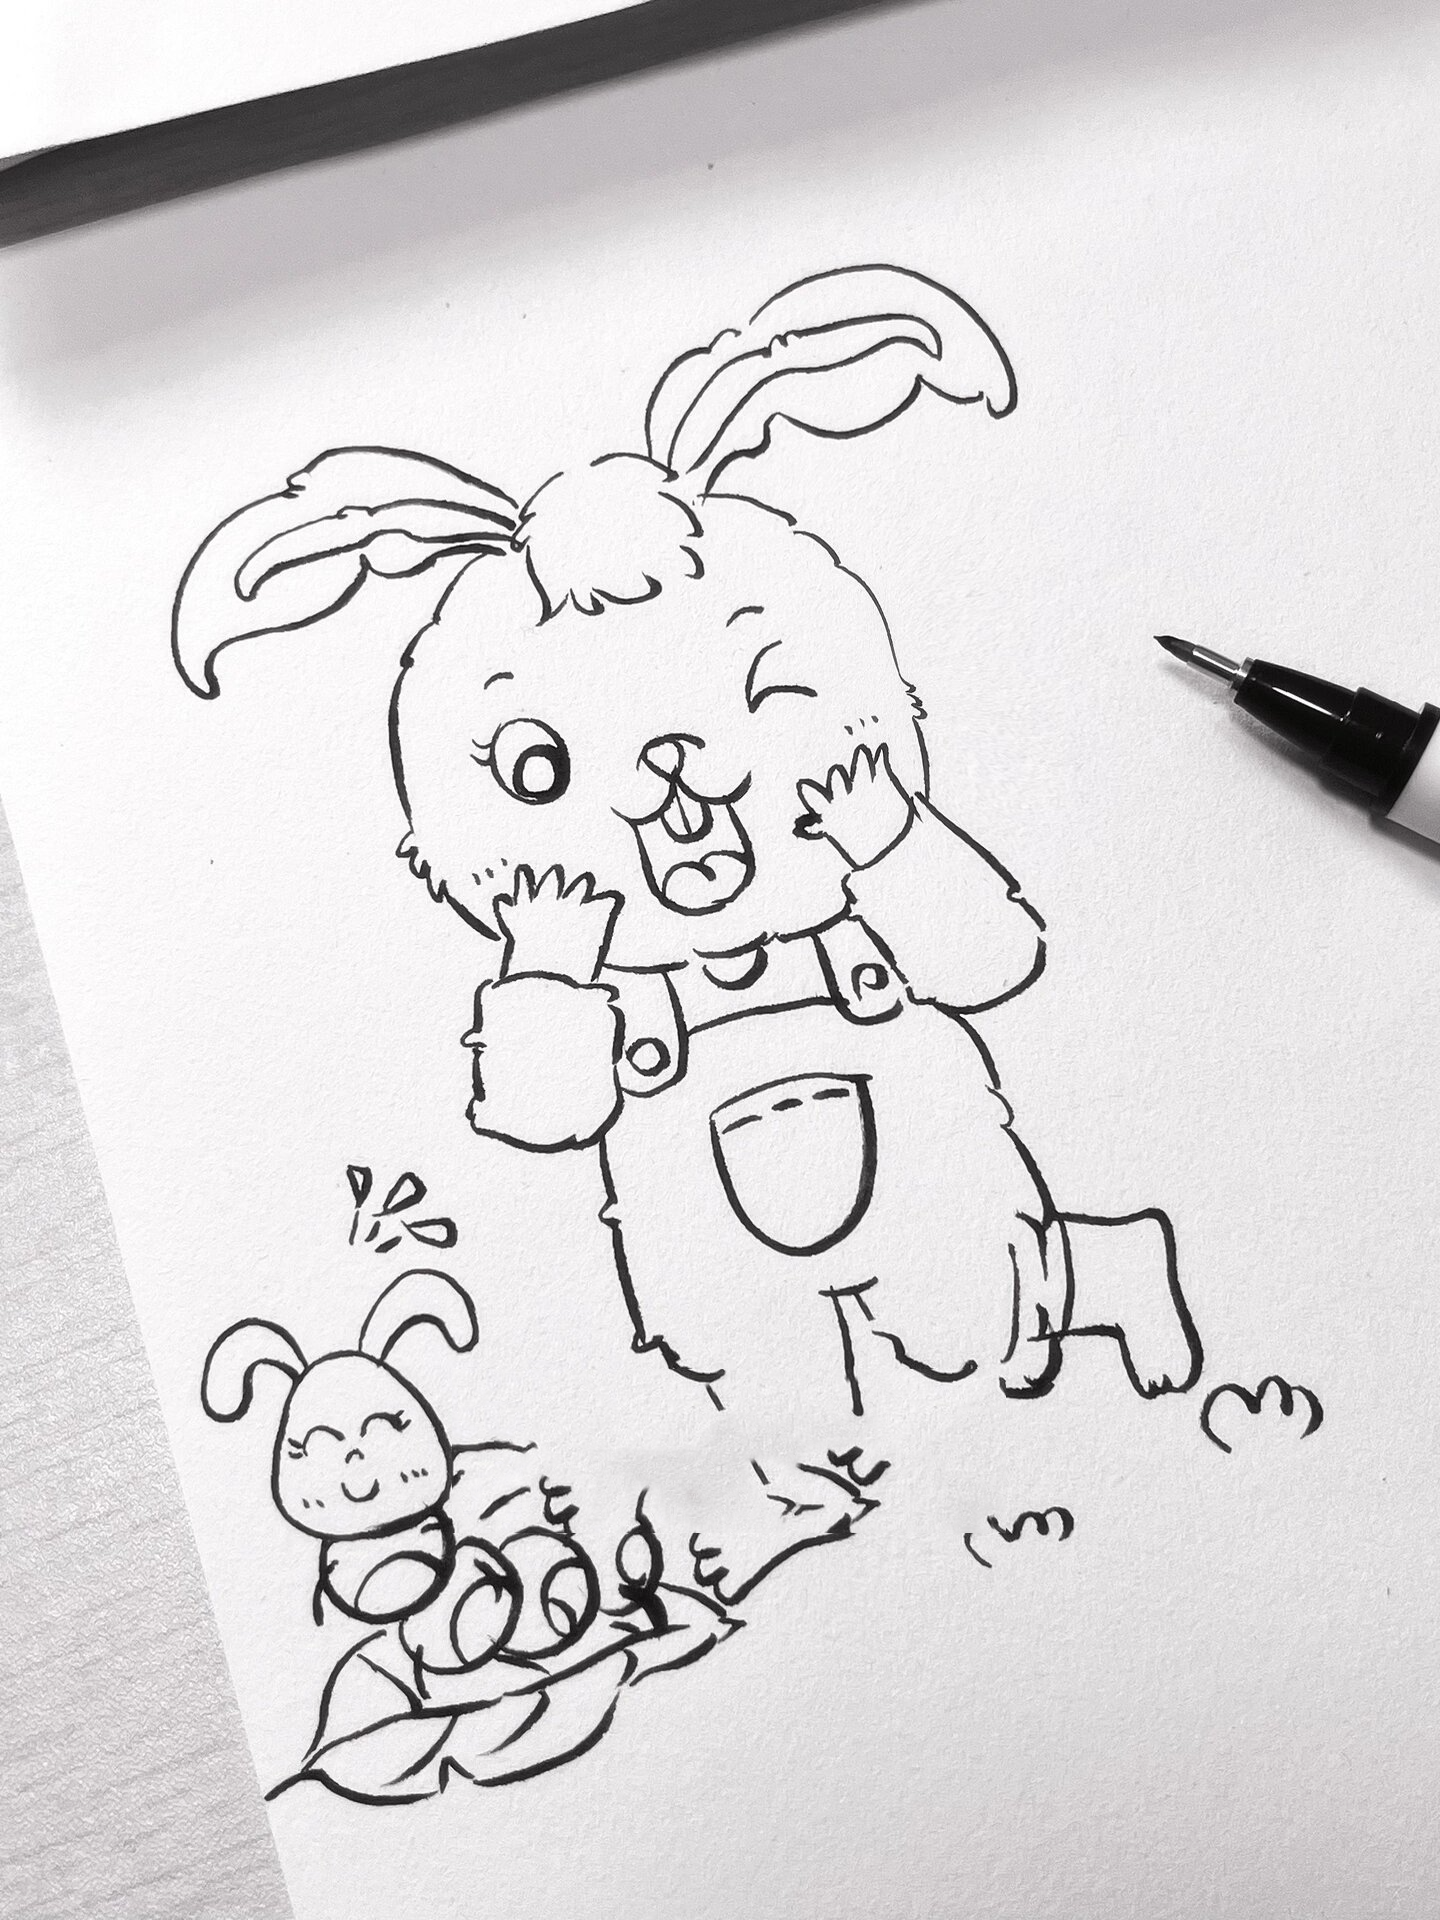 幼儿考编简笔画兔子合集图 主题:六种不同动作的兔子可用在主题画中